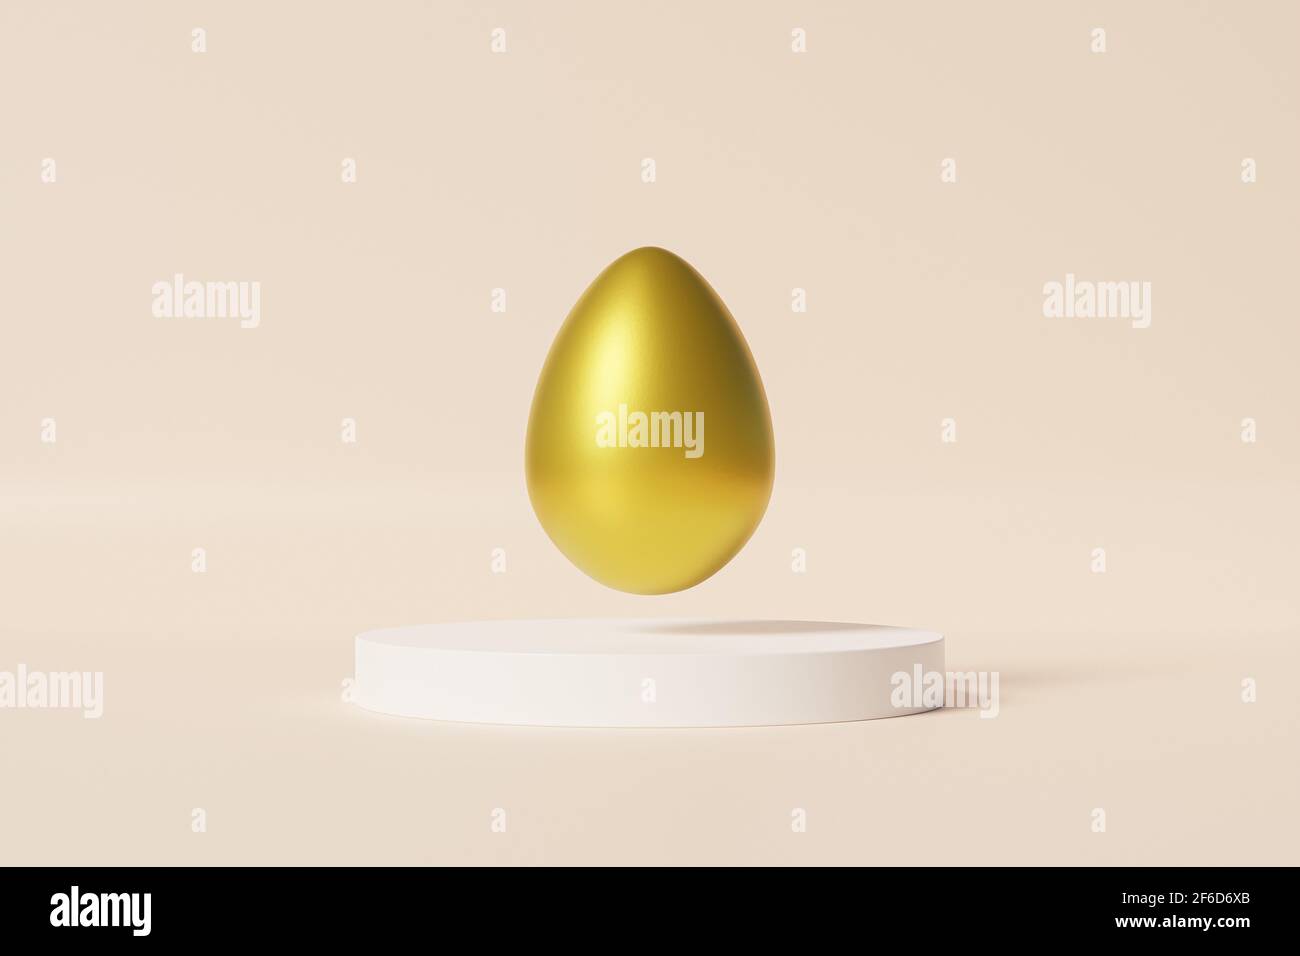 Oeuf de Pâques décoré d'or sur podium blanc, fond beige, carte de vacances du printemps avril, rendu d'illustration 3d Banque D'Images